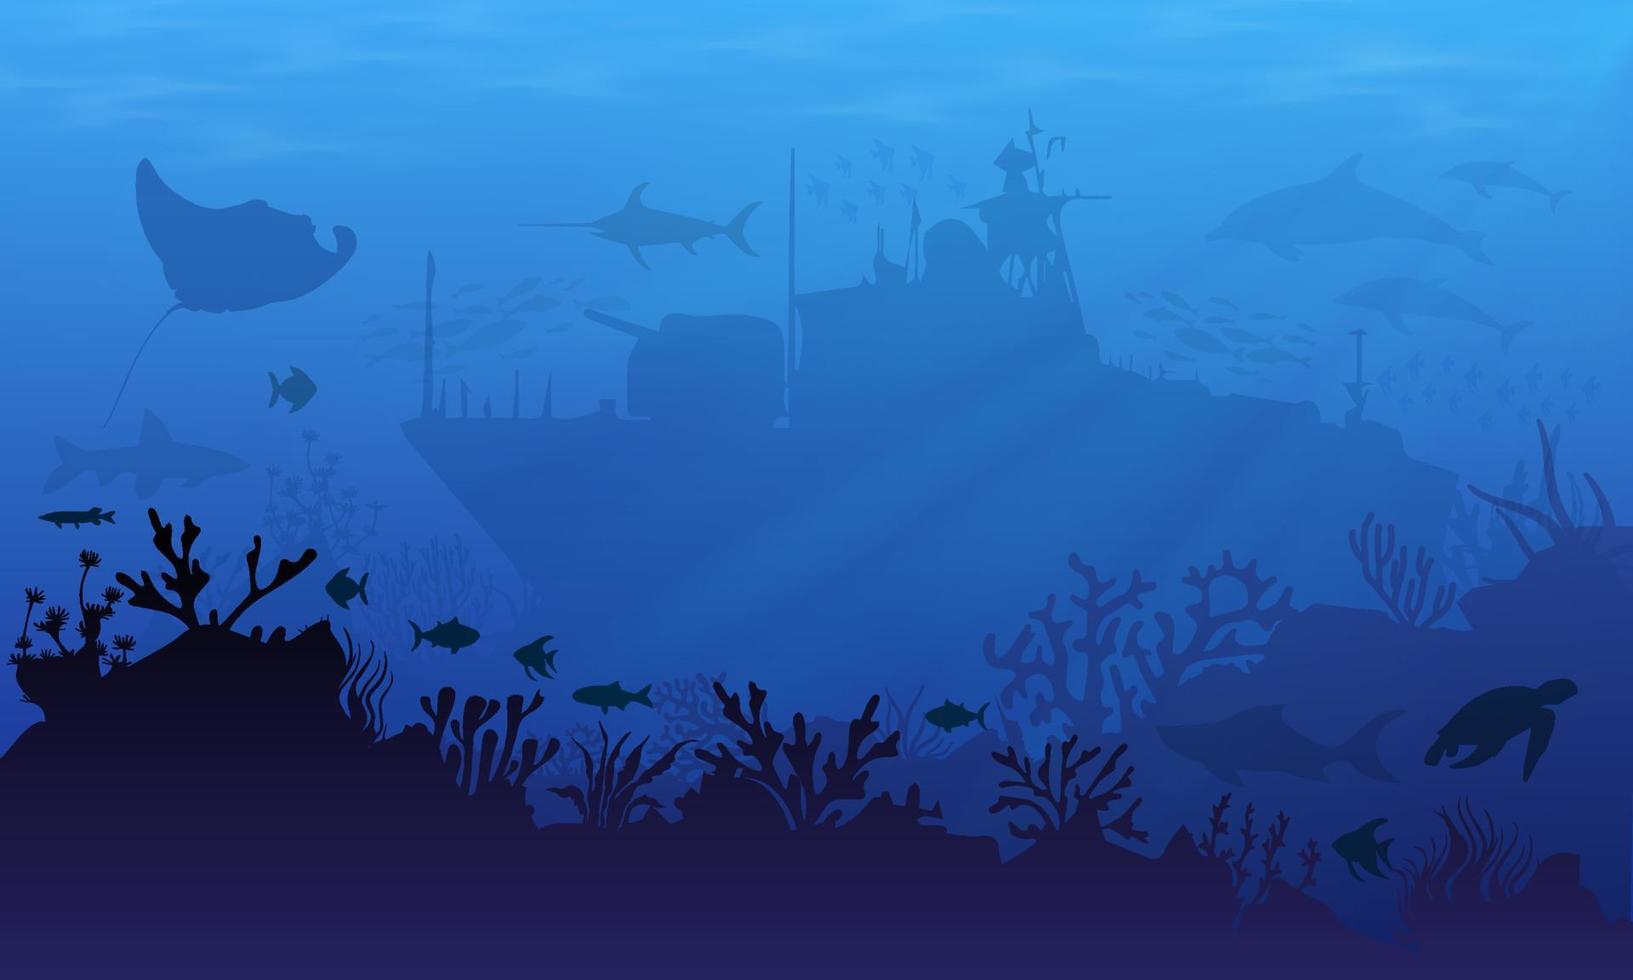 sfondo del paesaggio sottomarino con silhouette di naufragio, pastinaca, delfini e tartarughe. illustrazioni vettoriali di naufragi sottomarini